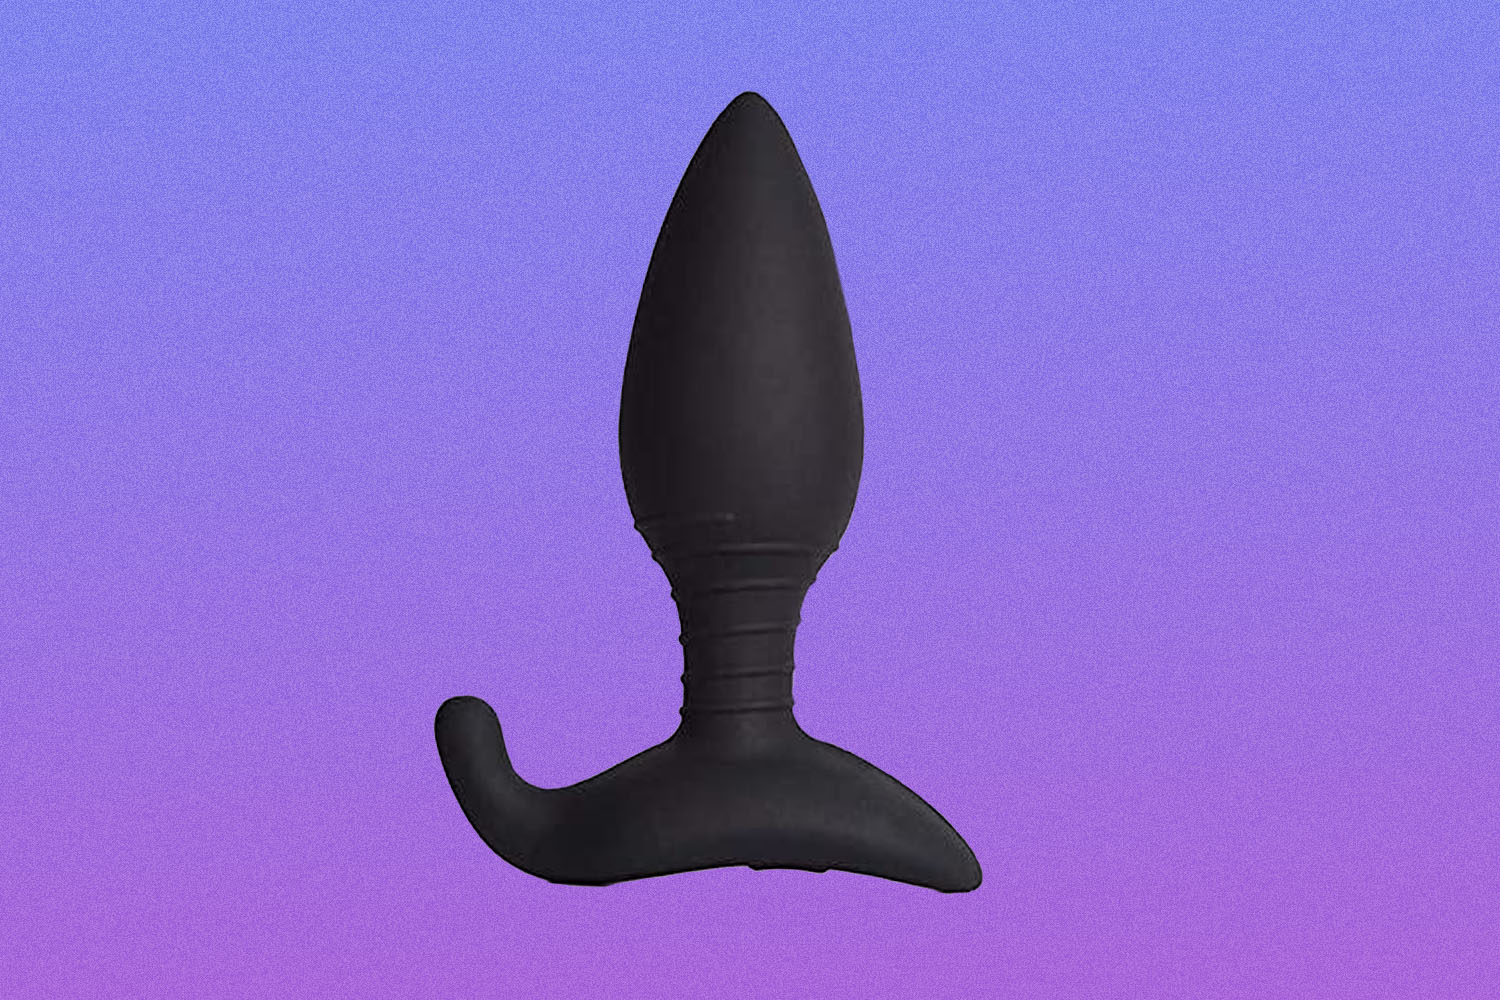 Black butt plug on purple background